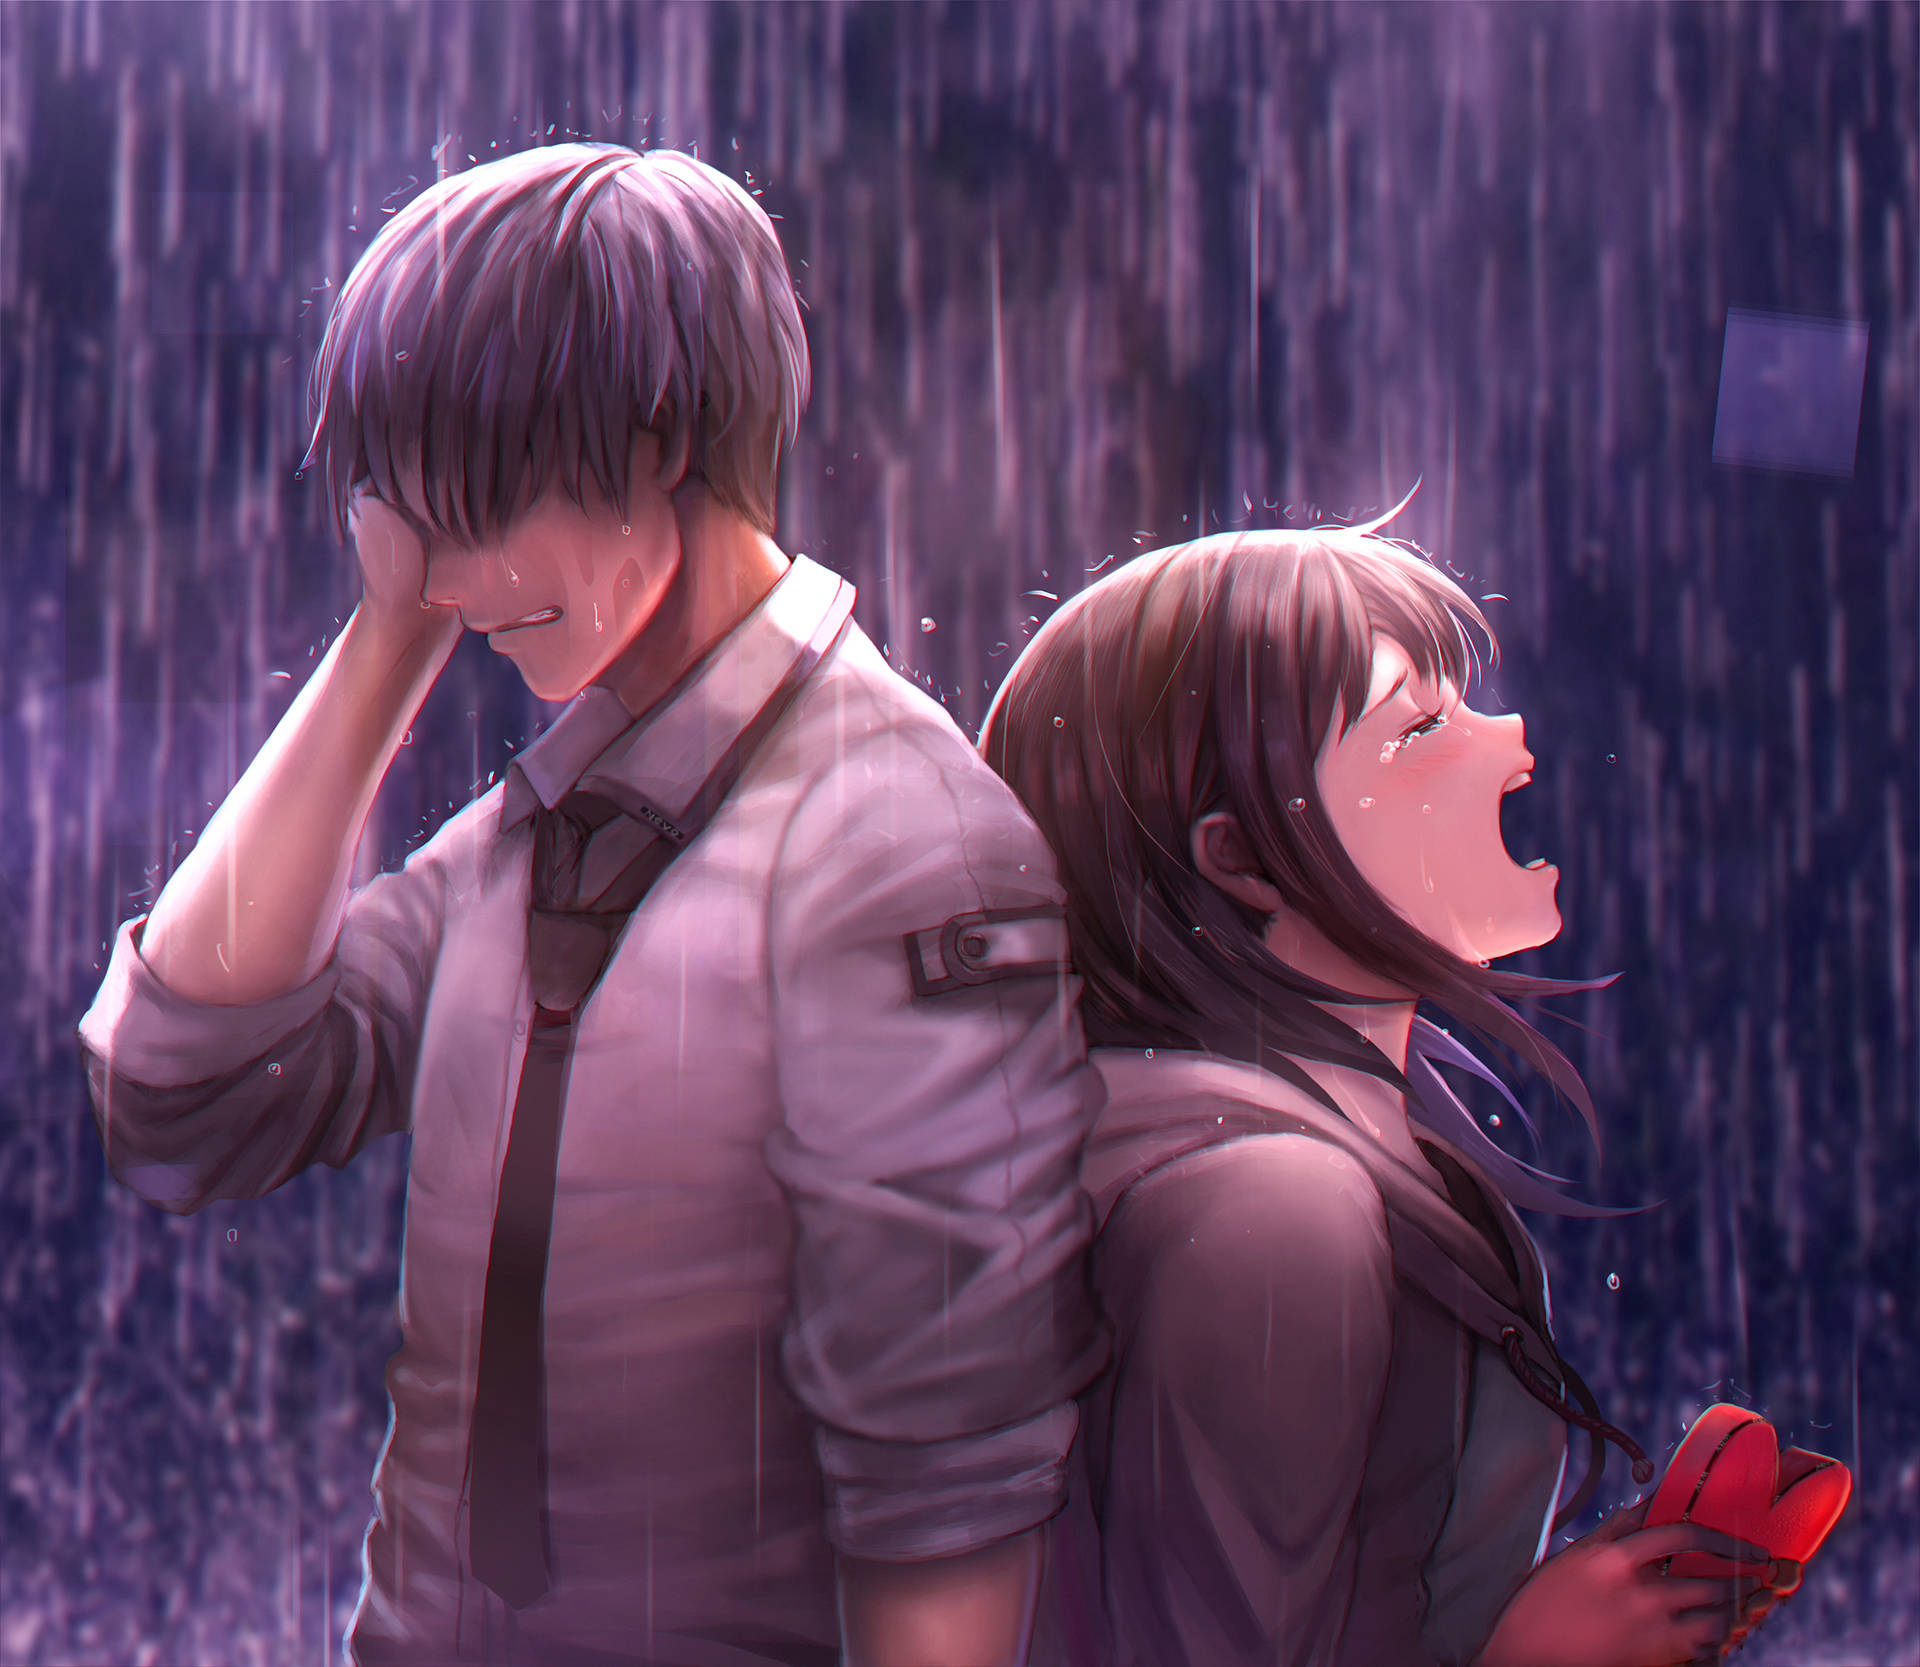 Sad Anime Boy And Girl